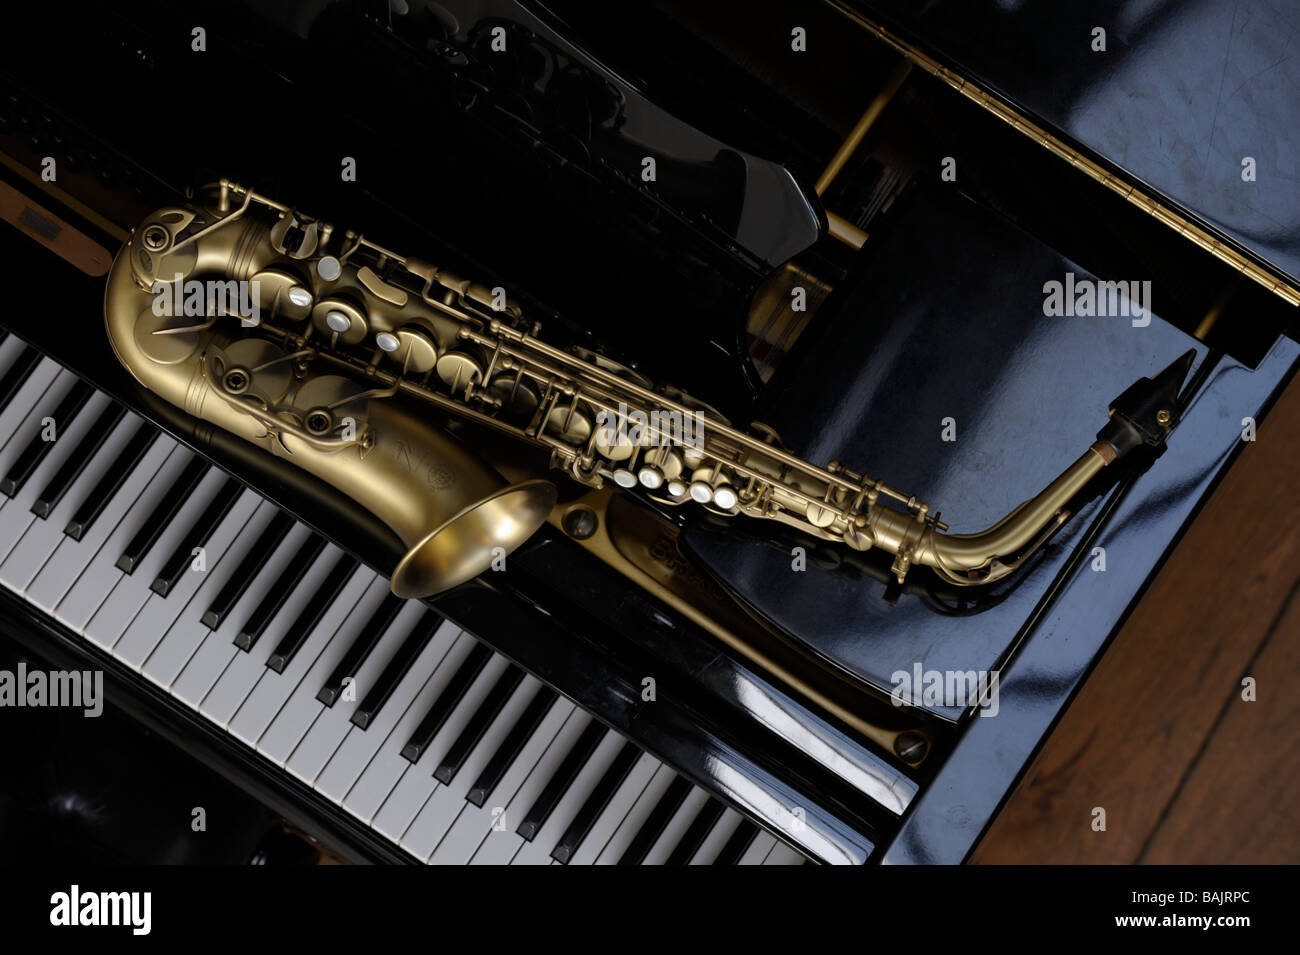 Saxophone Alto couché sur un grand piano Banque D'Images